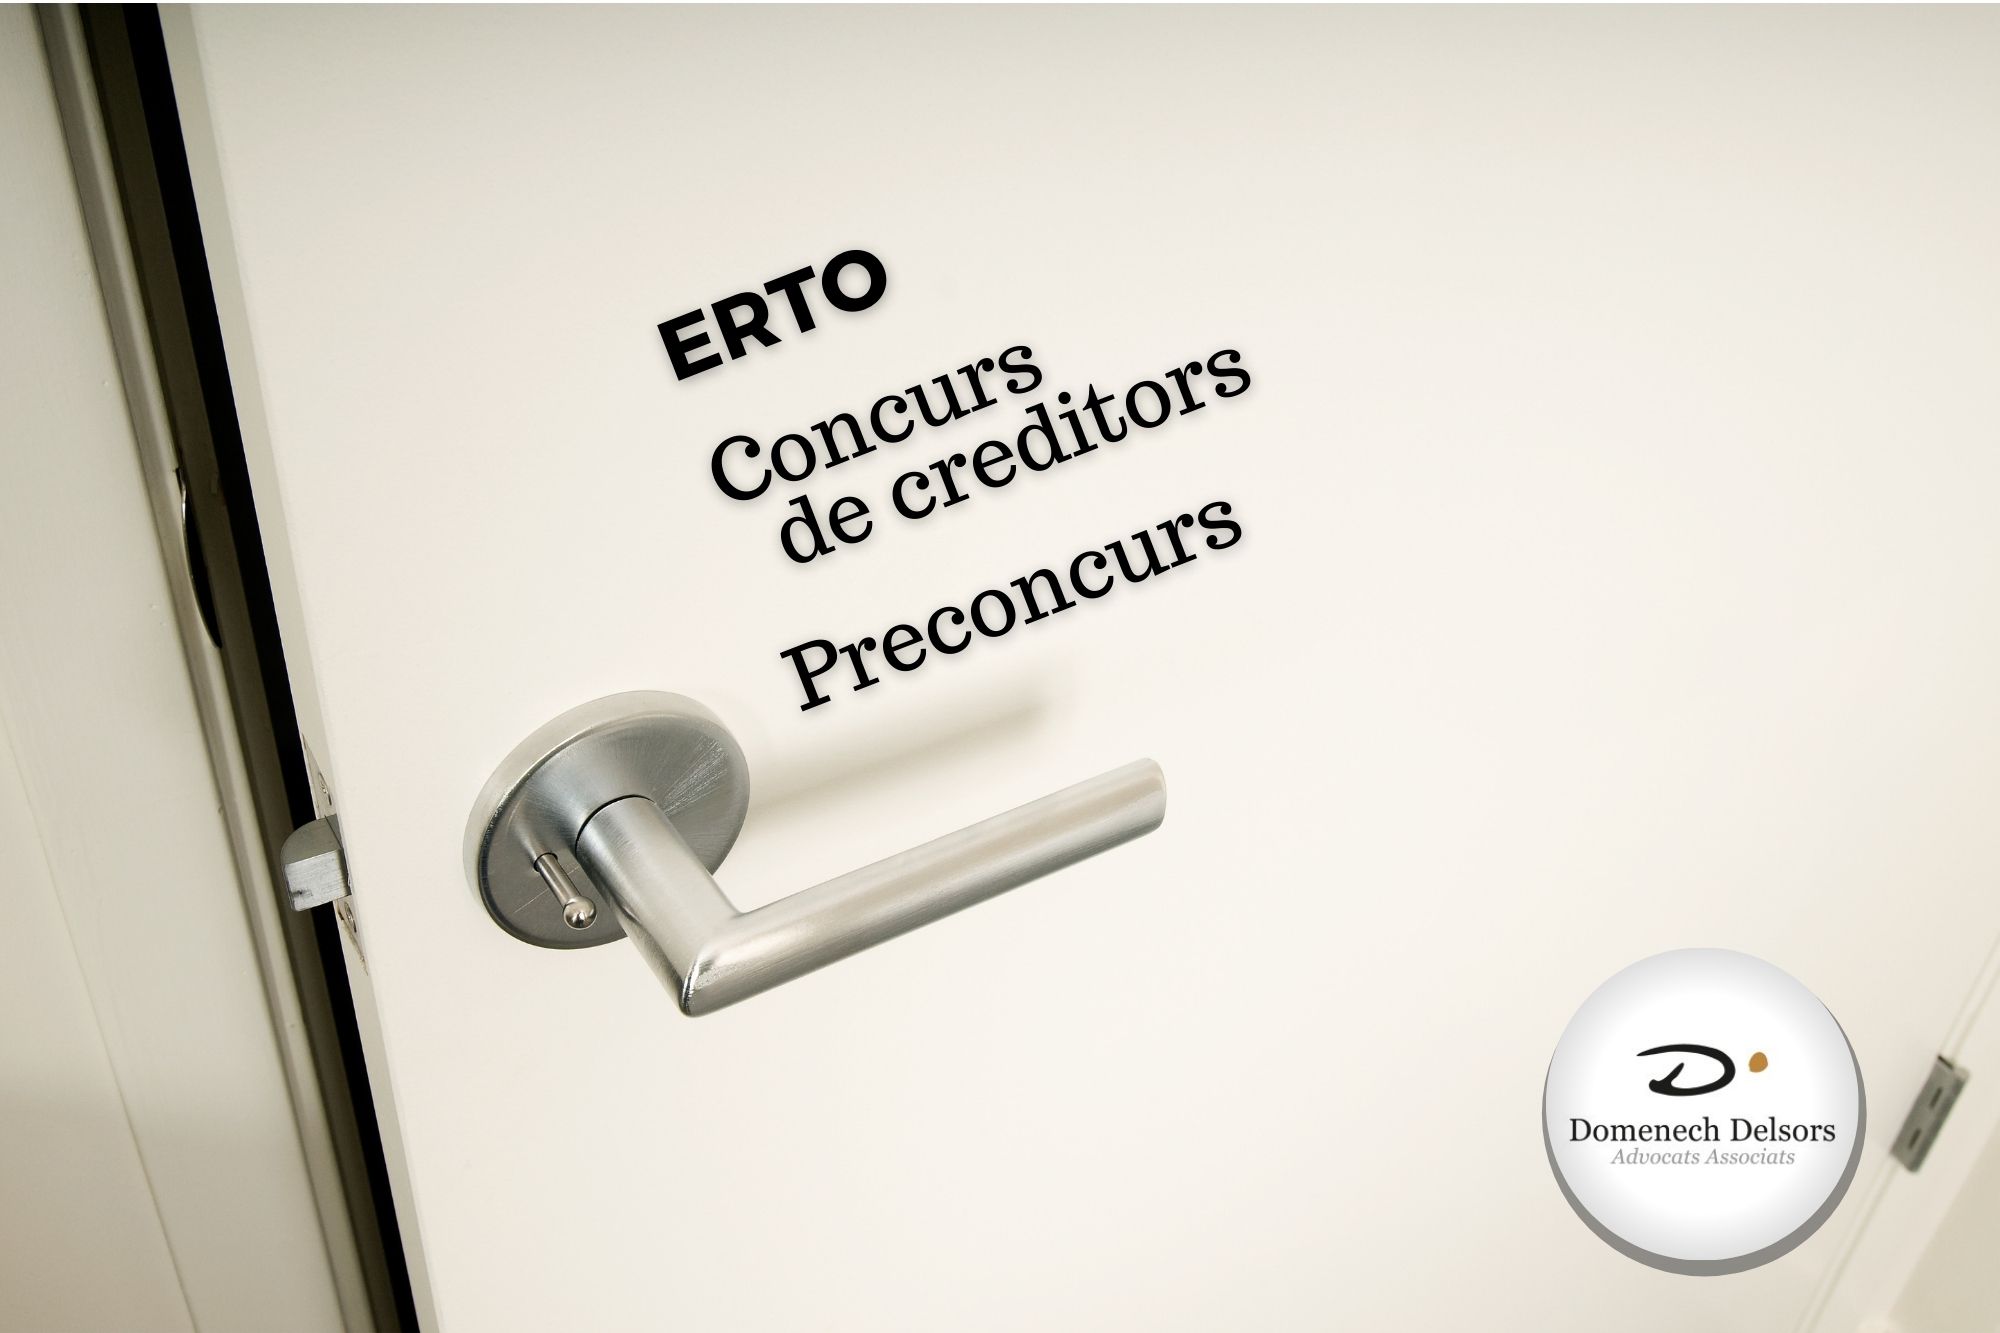 ERTO Concurs Creditors Preconcurs Covid19 Domenech Delsors